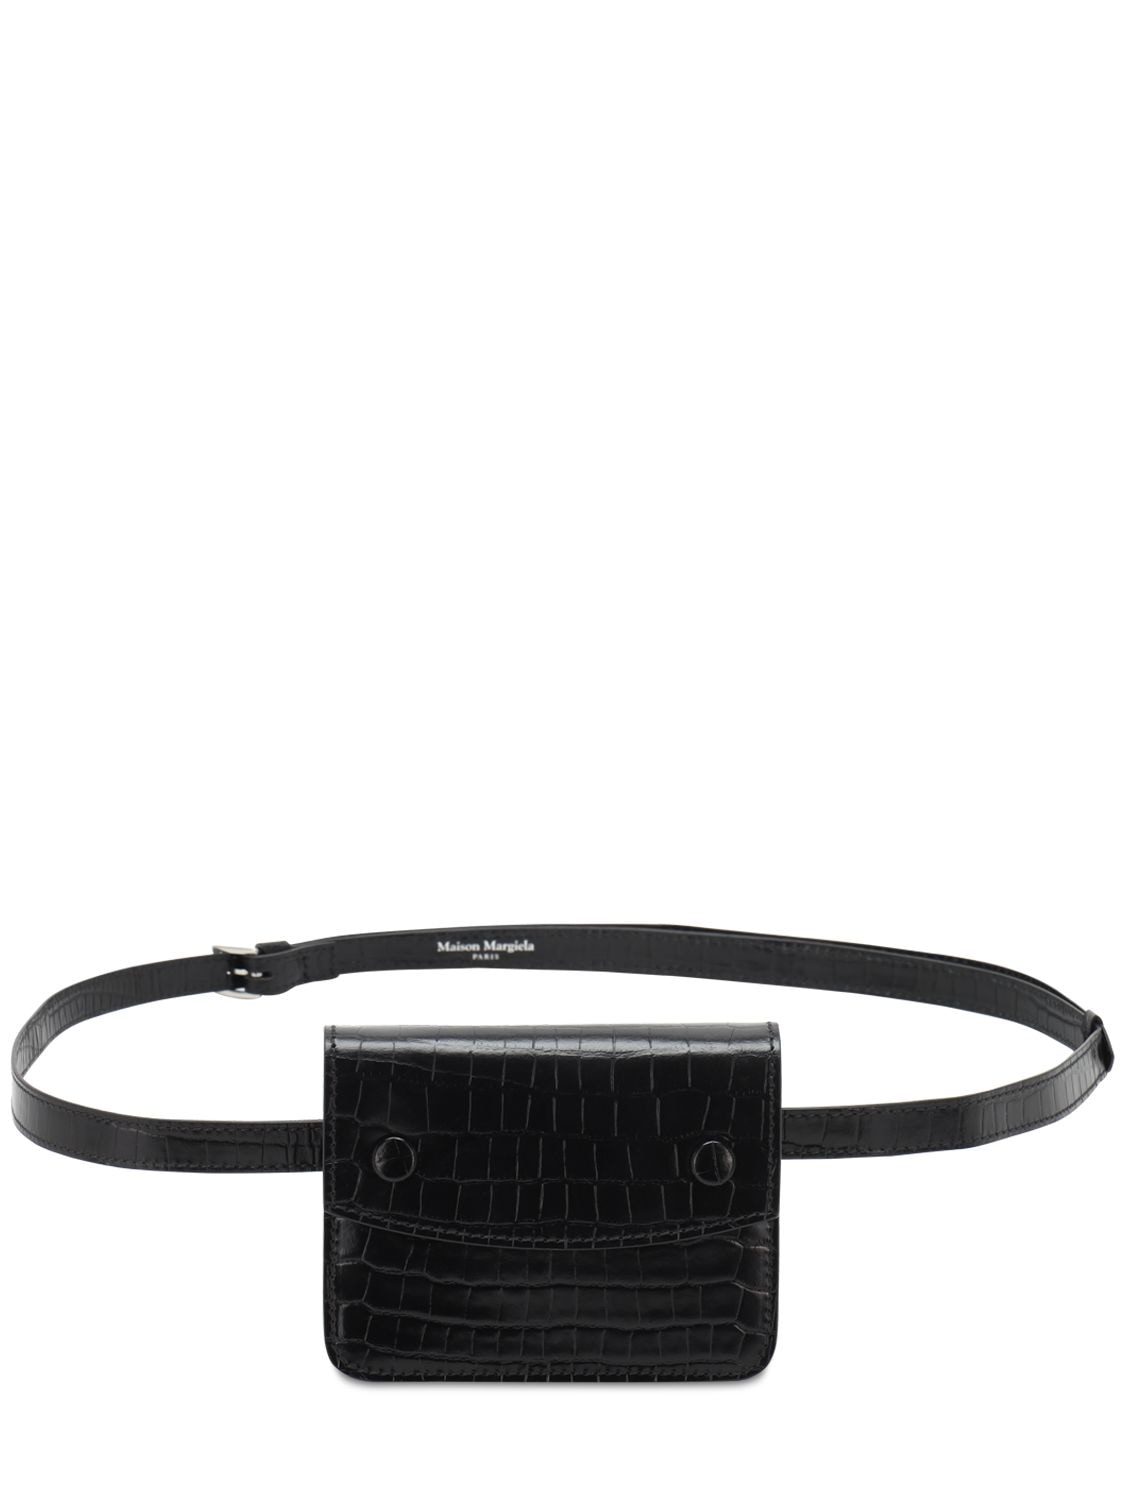 Maison Margiela Croc Embossed Leather Belt Bag In Black